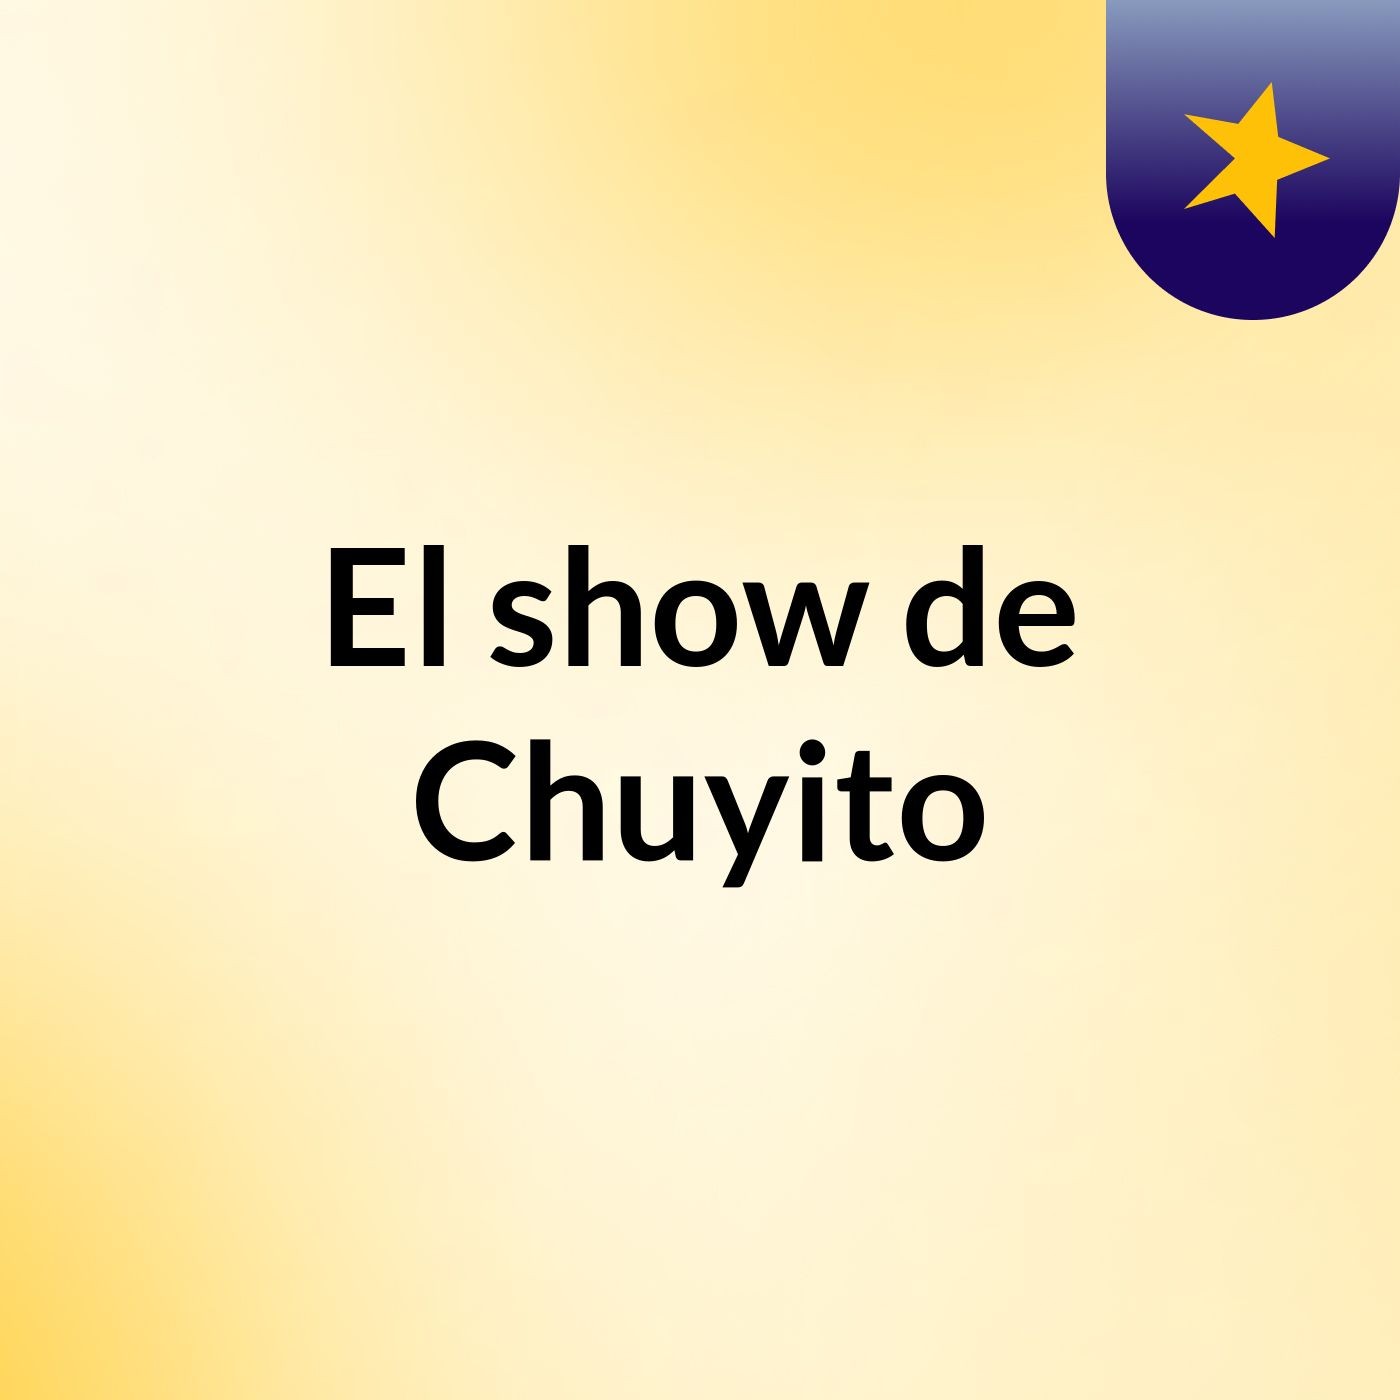 El show de Chuyito